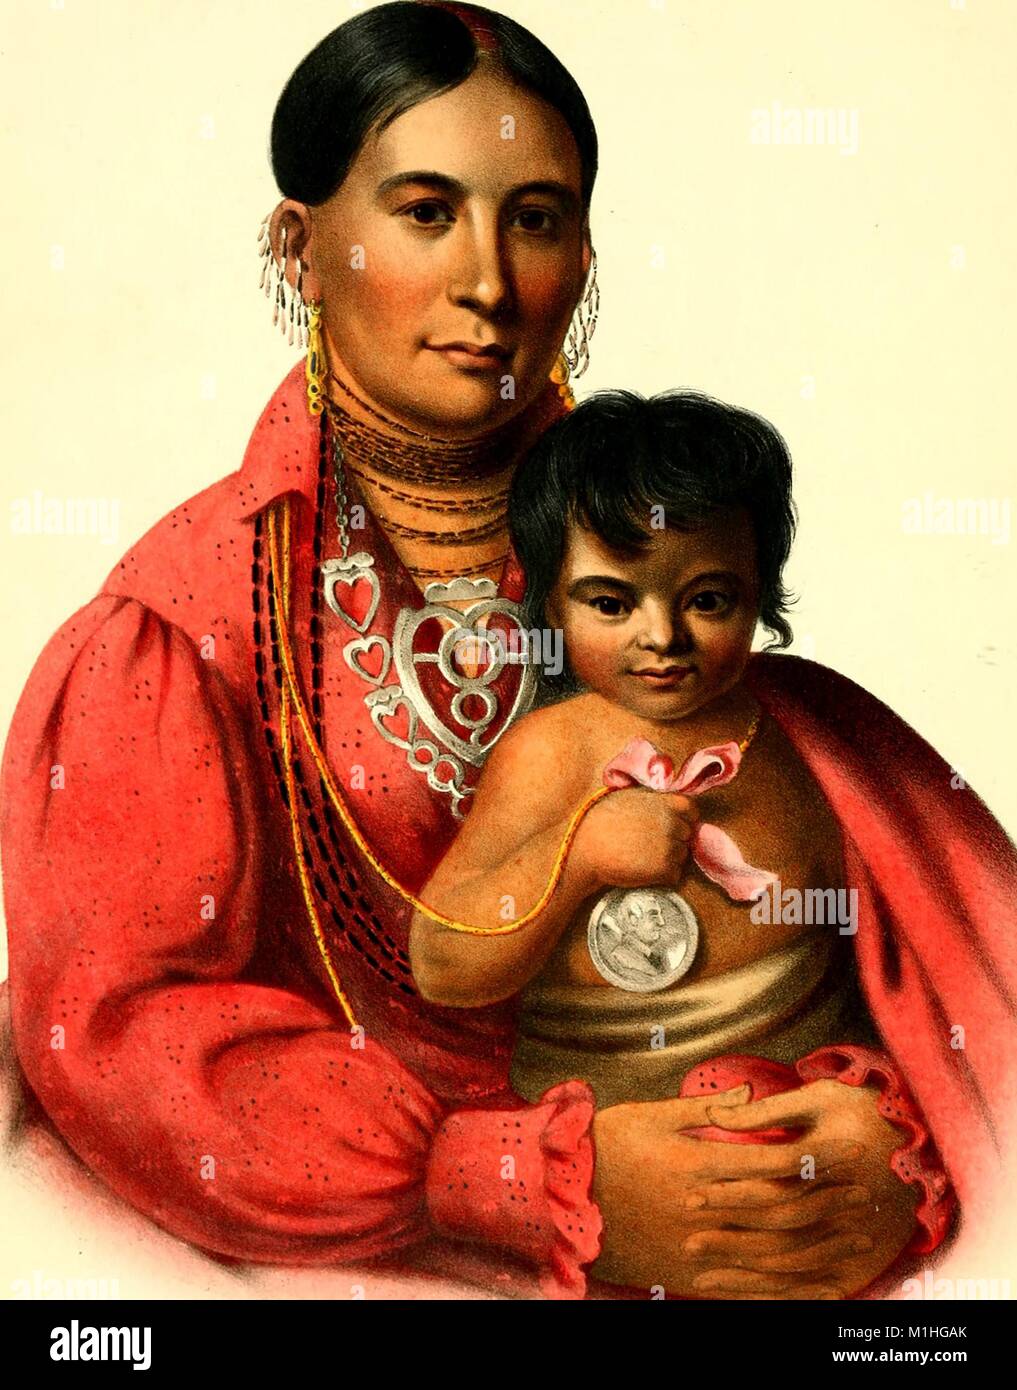 Jusqu'à la taille, la couleur de l'illustration d'une femme nommée Mohongo  Nation Osage, portant une robe rouge, boucles d'oreilles, plusieurs colliers  et tenant un petit enfant qui attache sa médaille d'argent dans